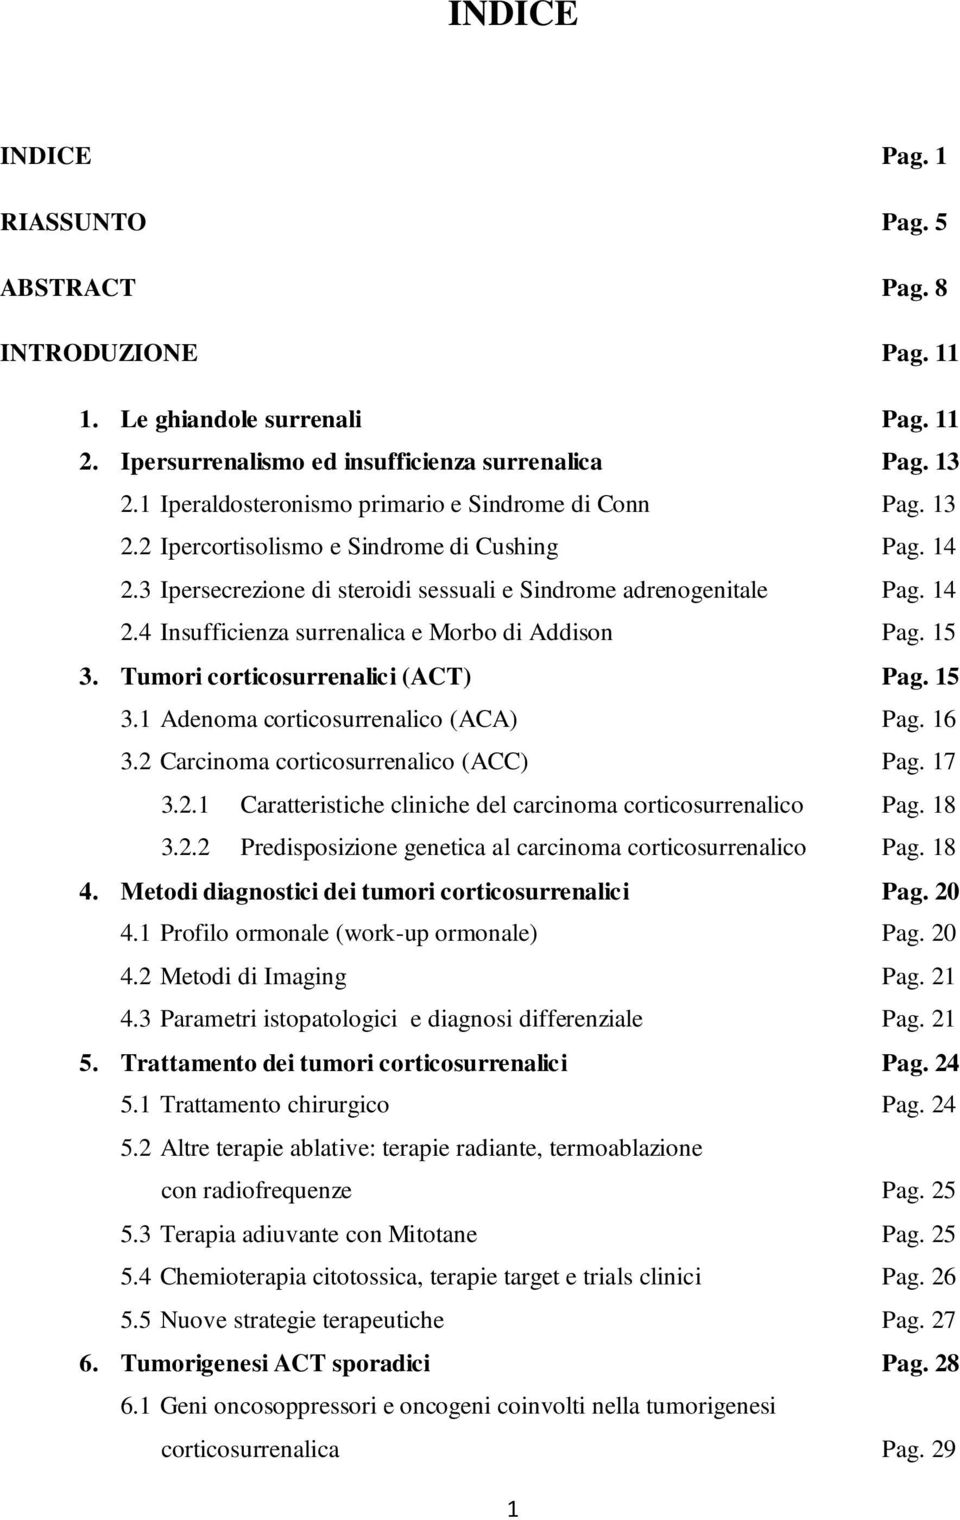 15 3. Tumori corticosurrenalici (ACT) Pag. 15 3.1 Adenoma corticosurrenalico (ACA) Pag. 16 3.2 Carcinoma corticosurrenalico (ACC) Pag. 17 3.2.1 Caratteristiche cliniche del carcinoma corticosurrenalico Pag.